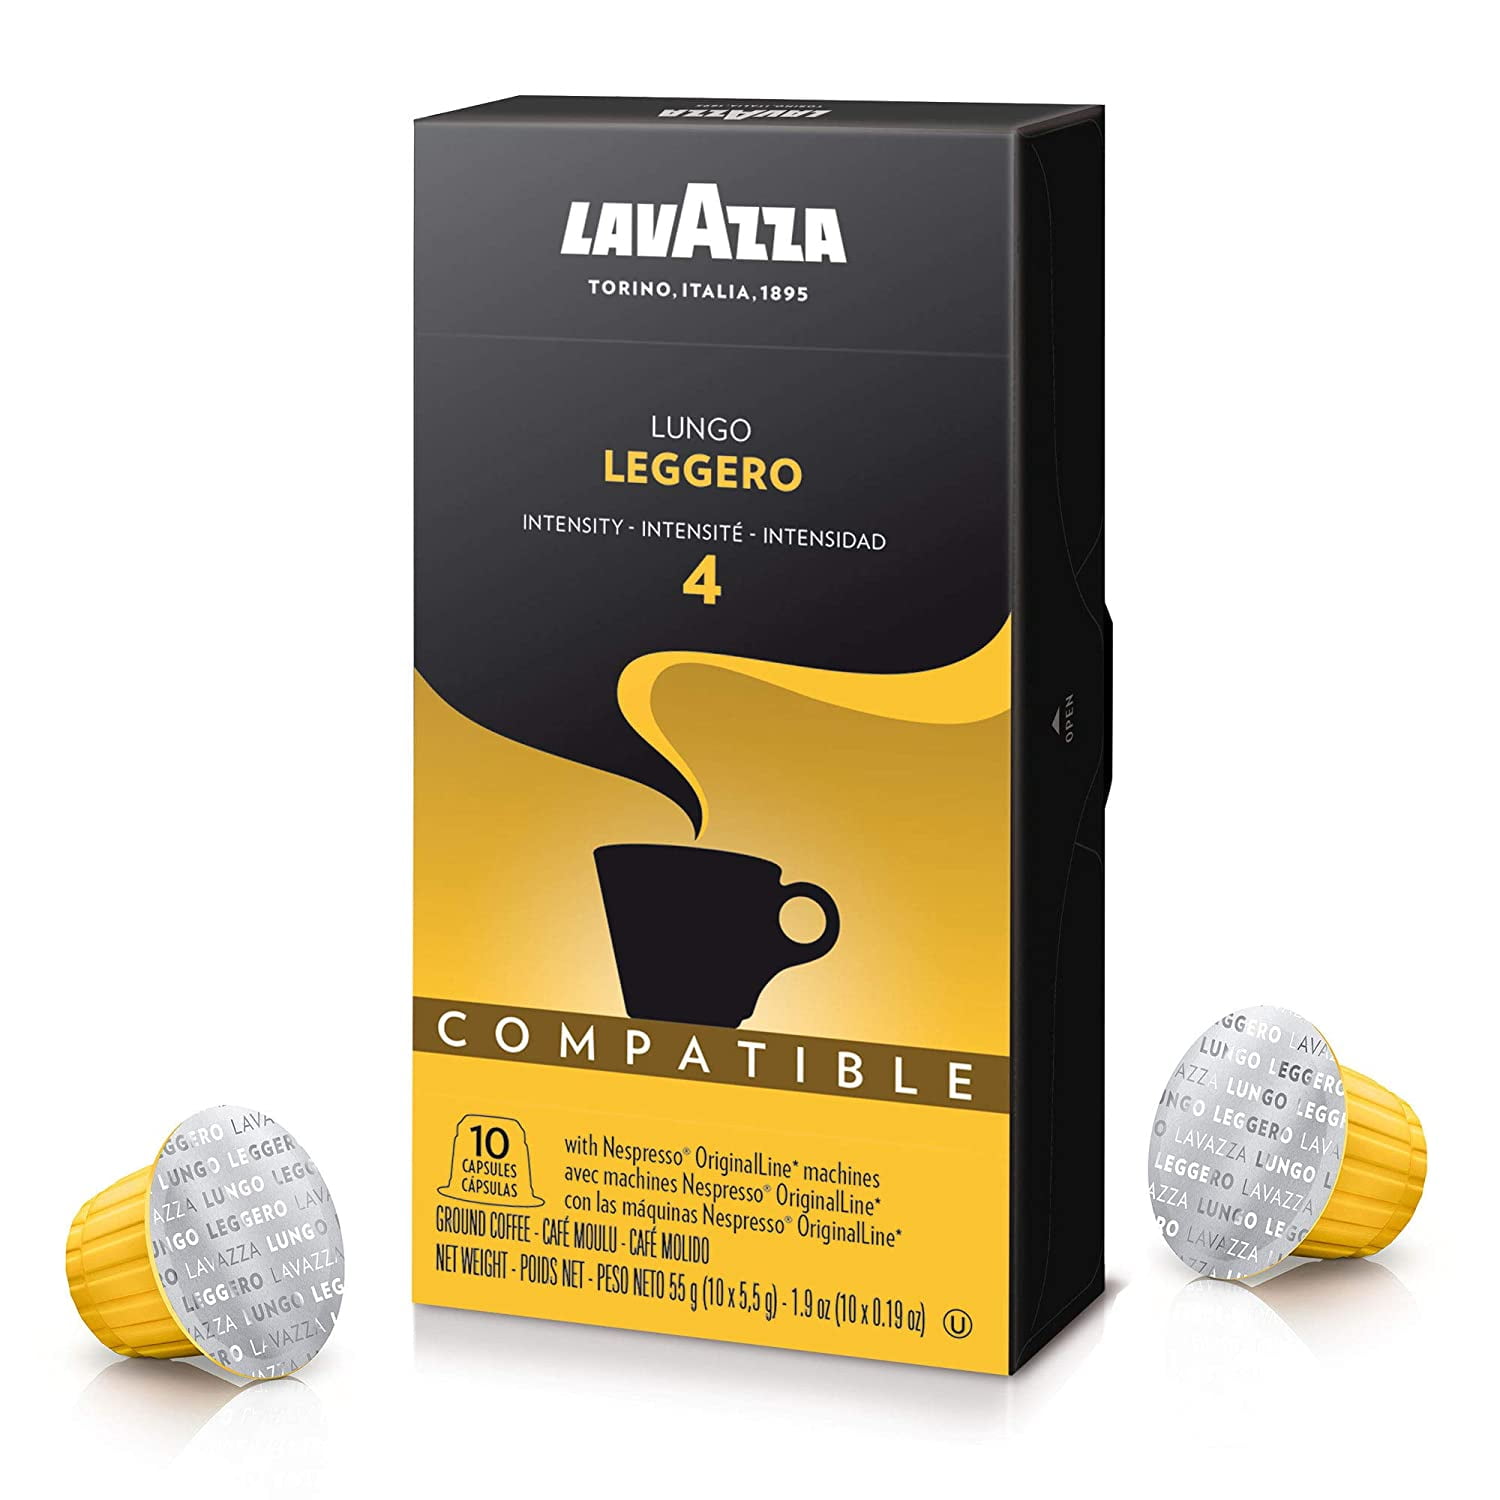 Espresso Leggero, Coffee Pods